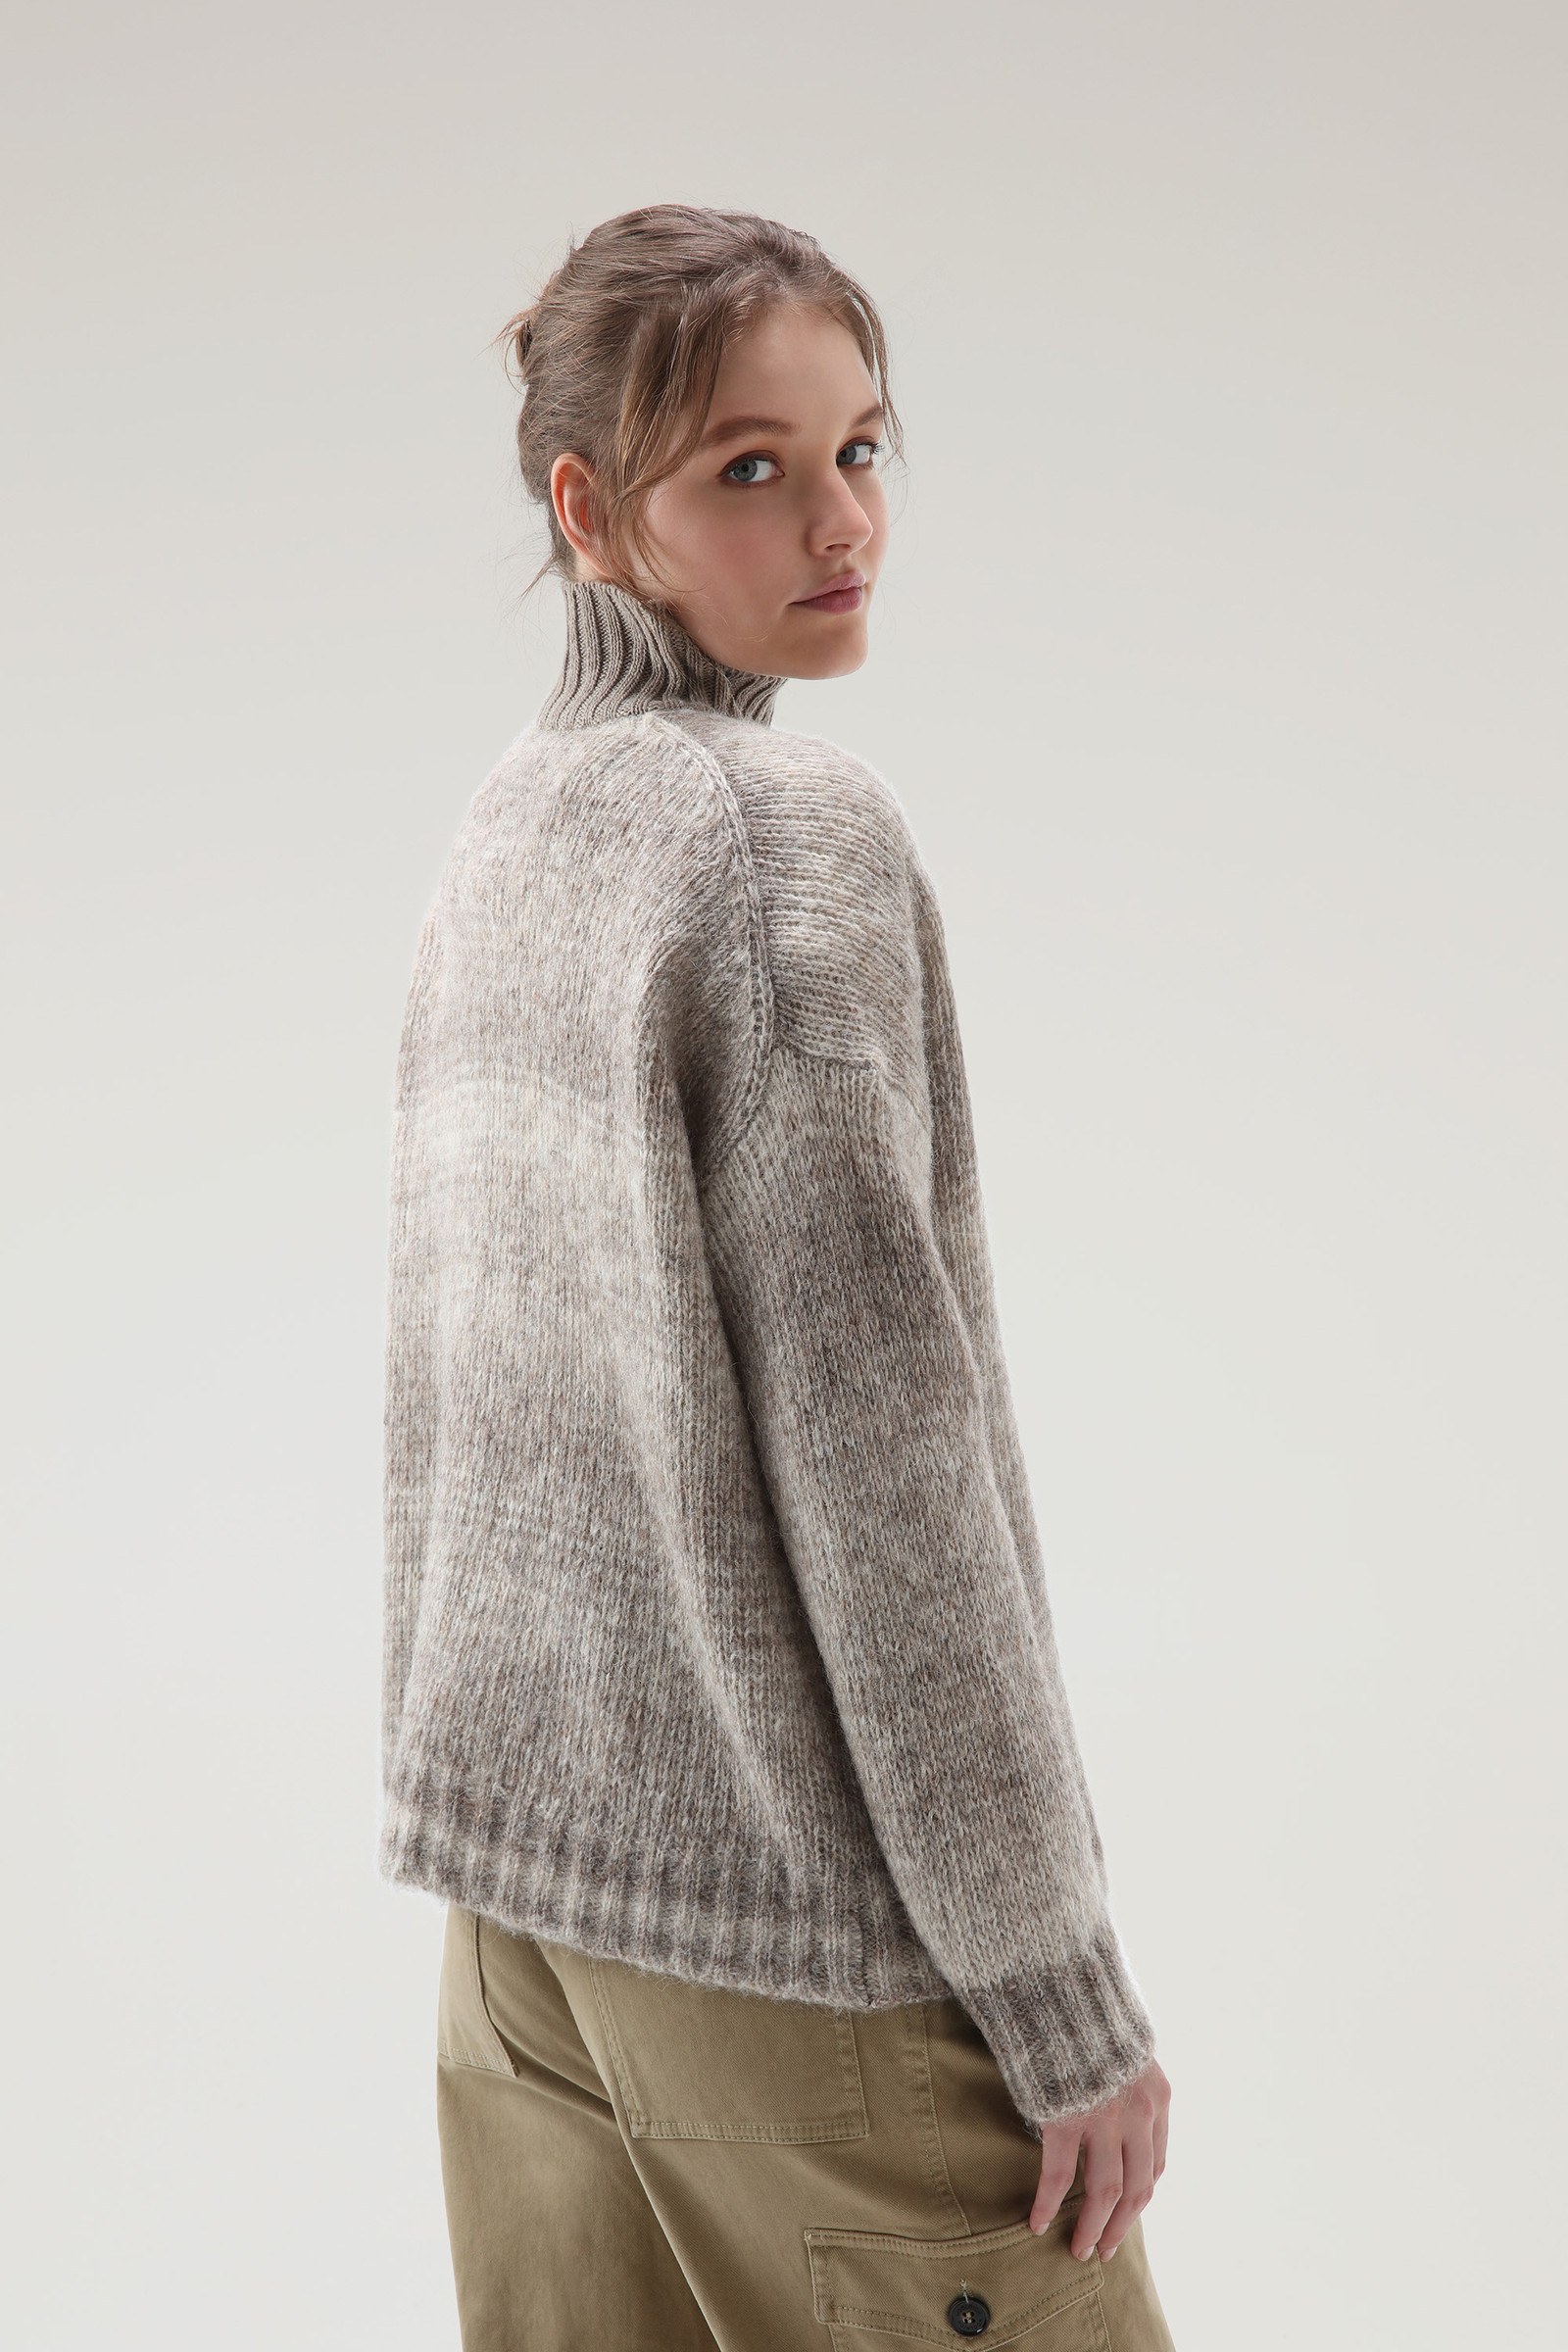 クリアランス販促品 deadstock RLX alpaca turtleneck sweater - トップス